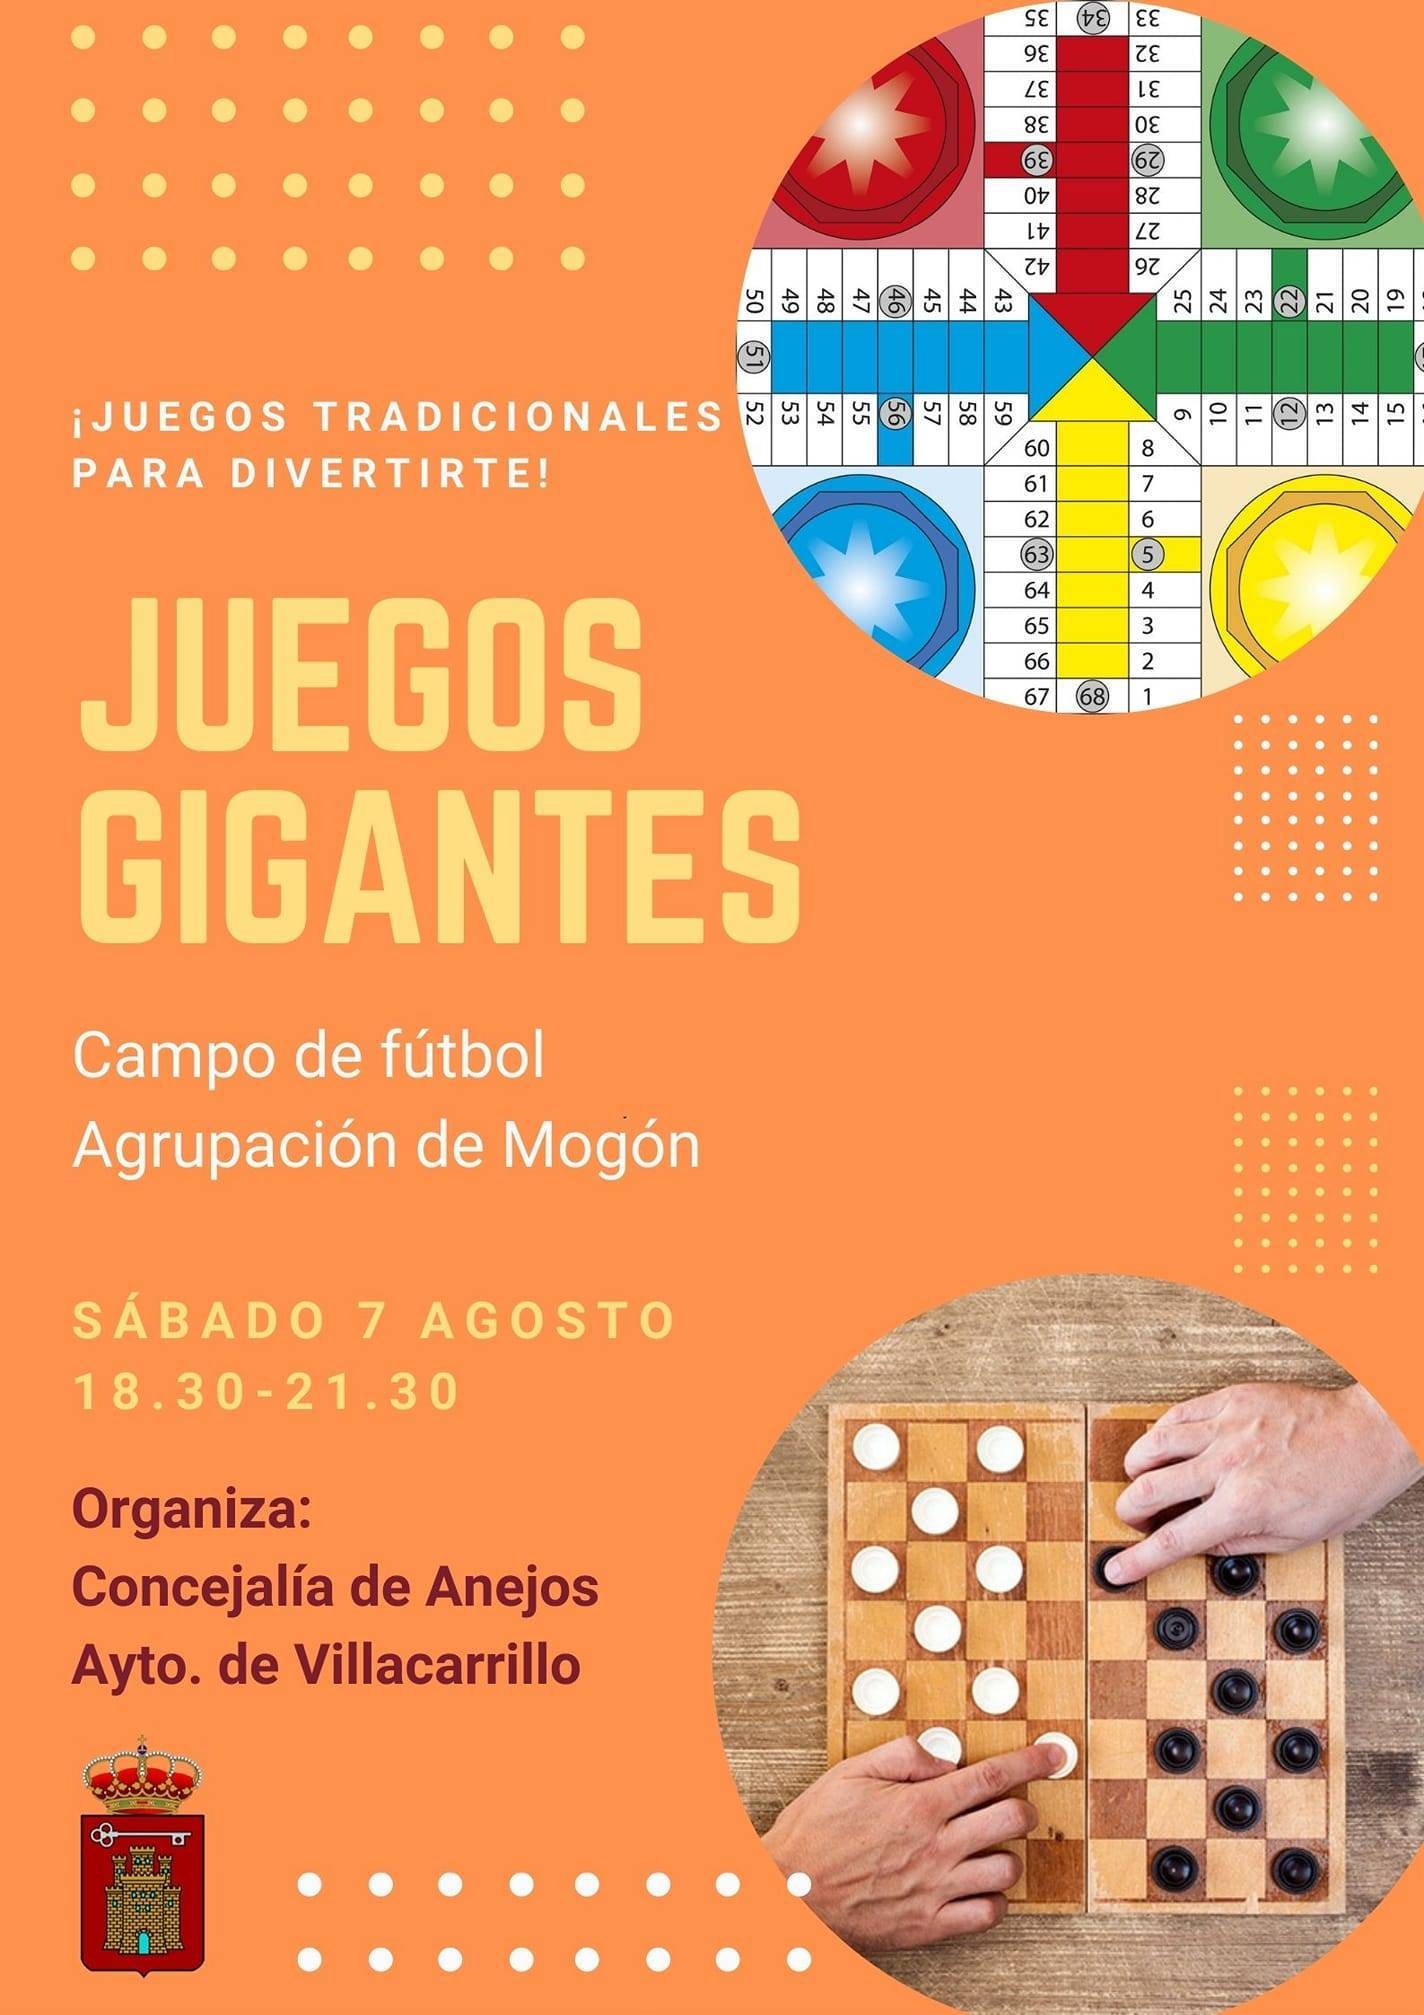 Juegos gigantes (2021) - Villacarrillo (Jaén)